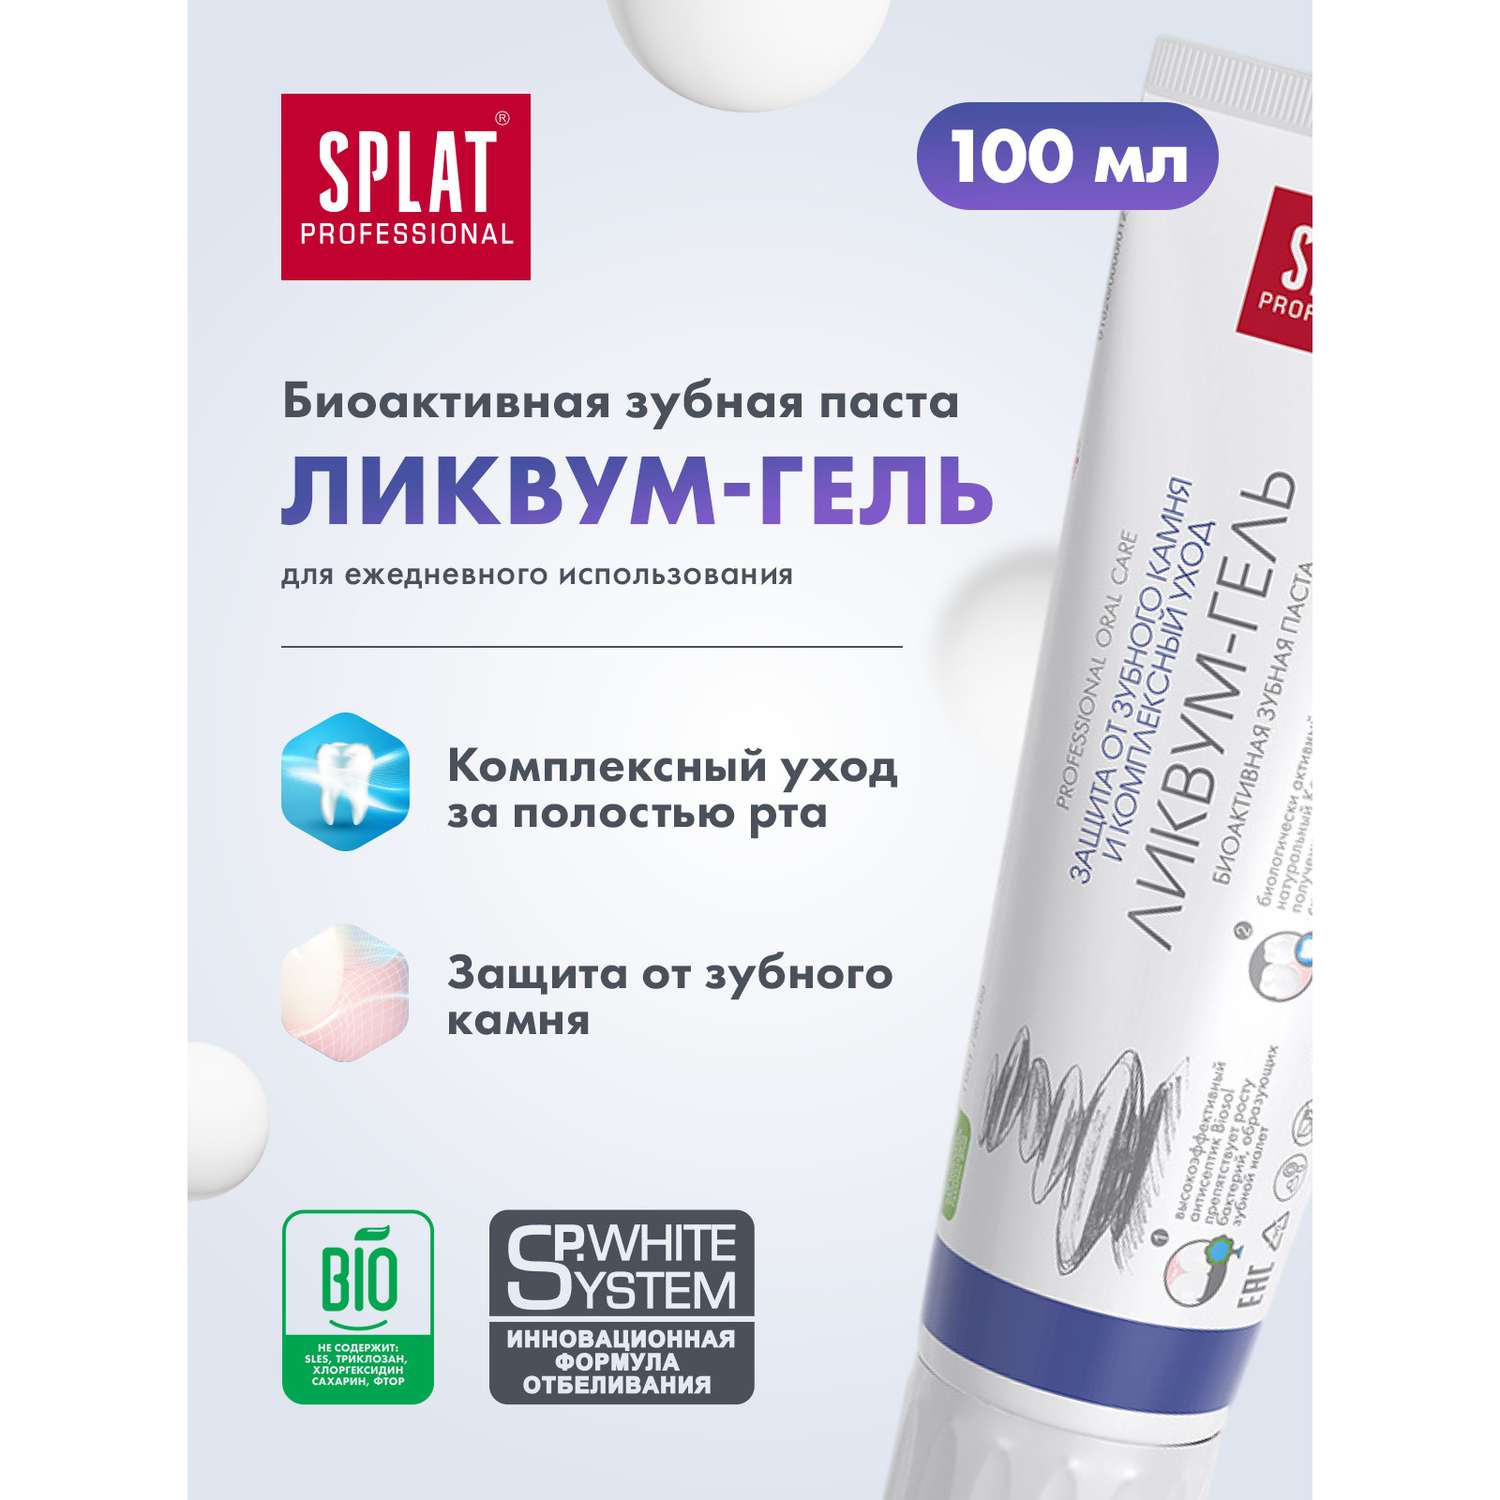 Зубная паста Splat Ликвум-гель для комплексного ухода за зубами и профилактики зубного камня 100 мл - фото 2